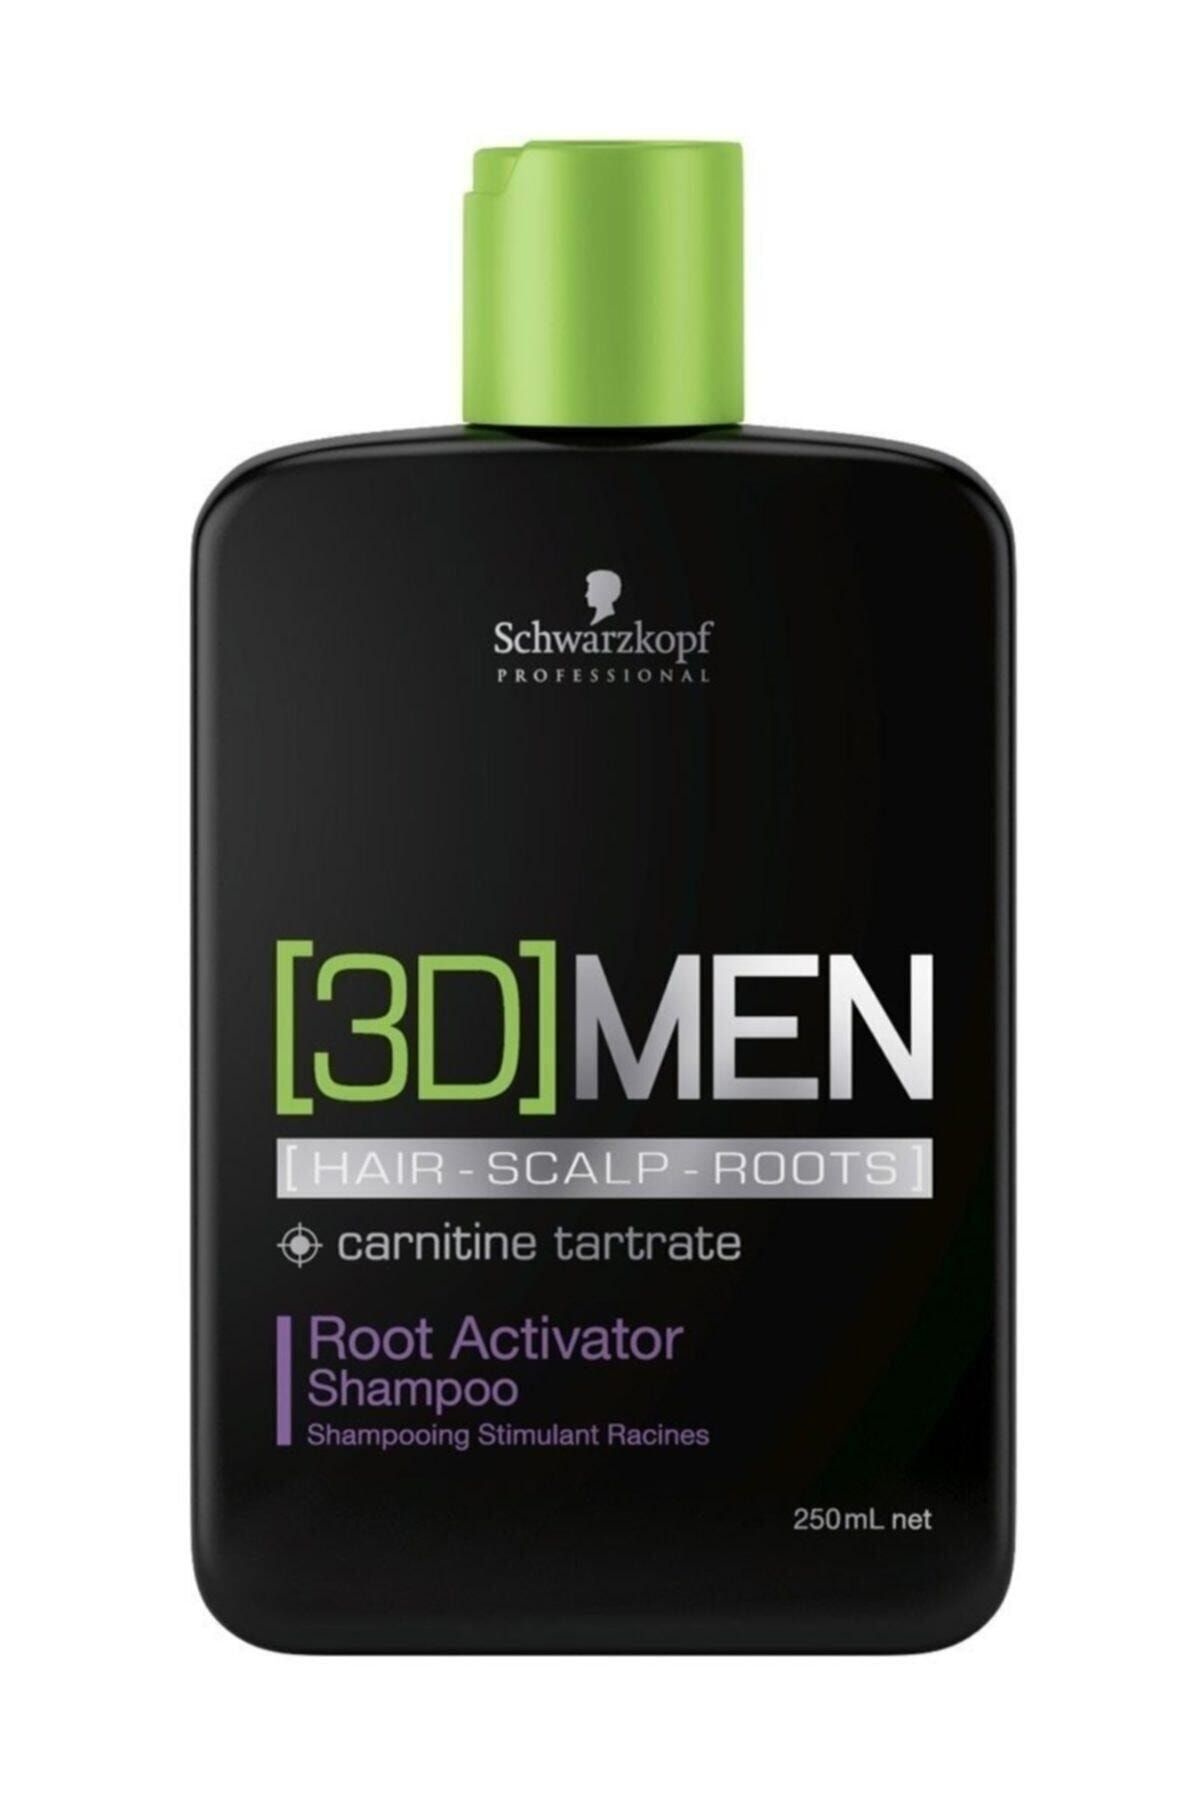 3D Mension 3d Men Dökülme Önleyici Şampuan 250 ml 4045787264425